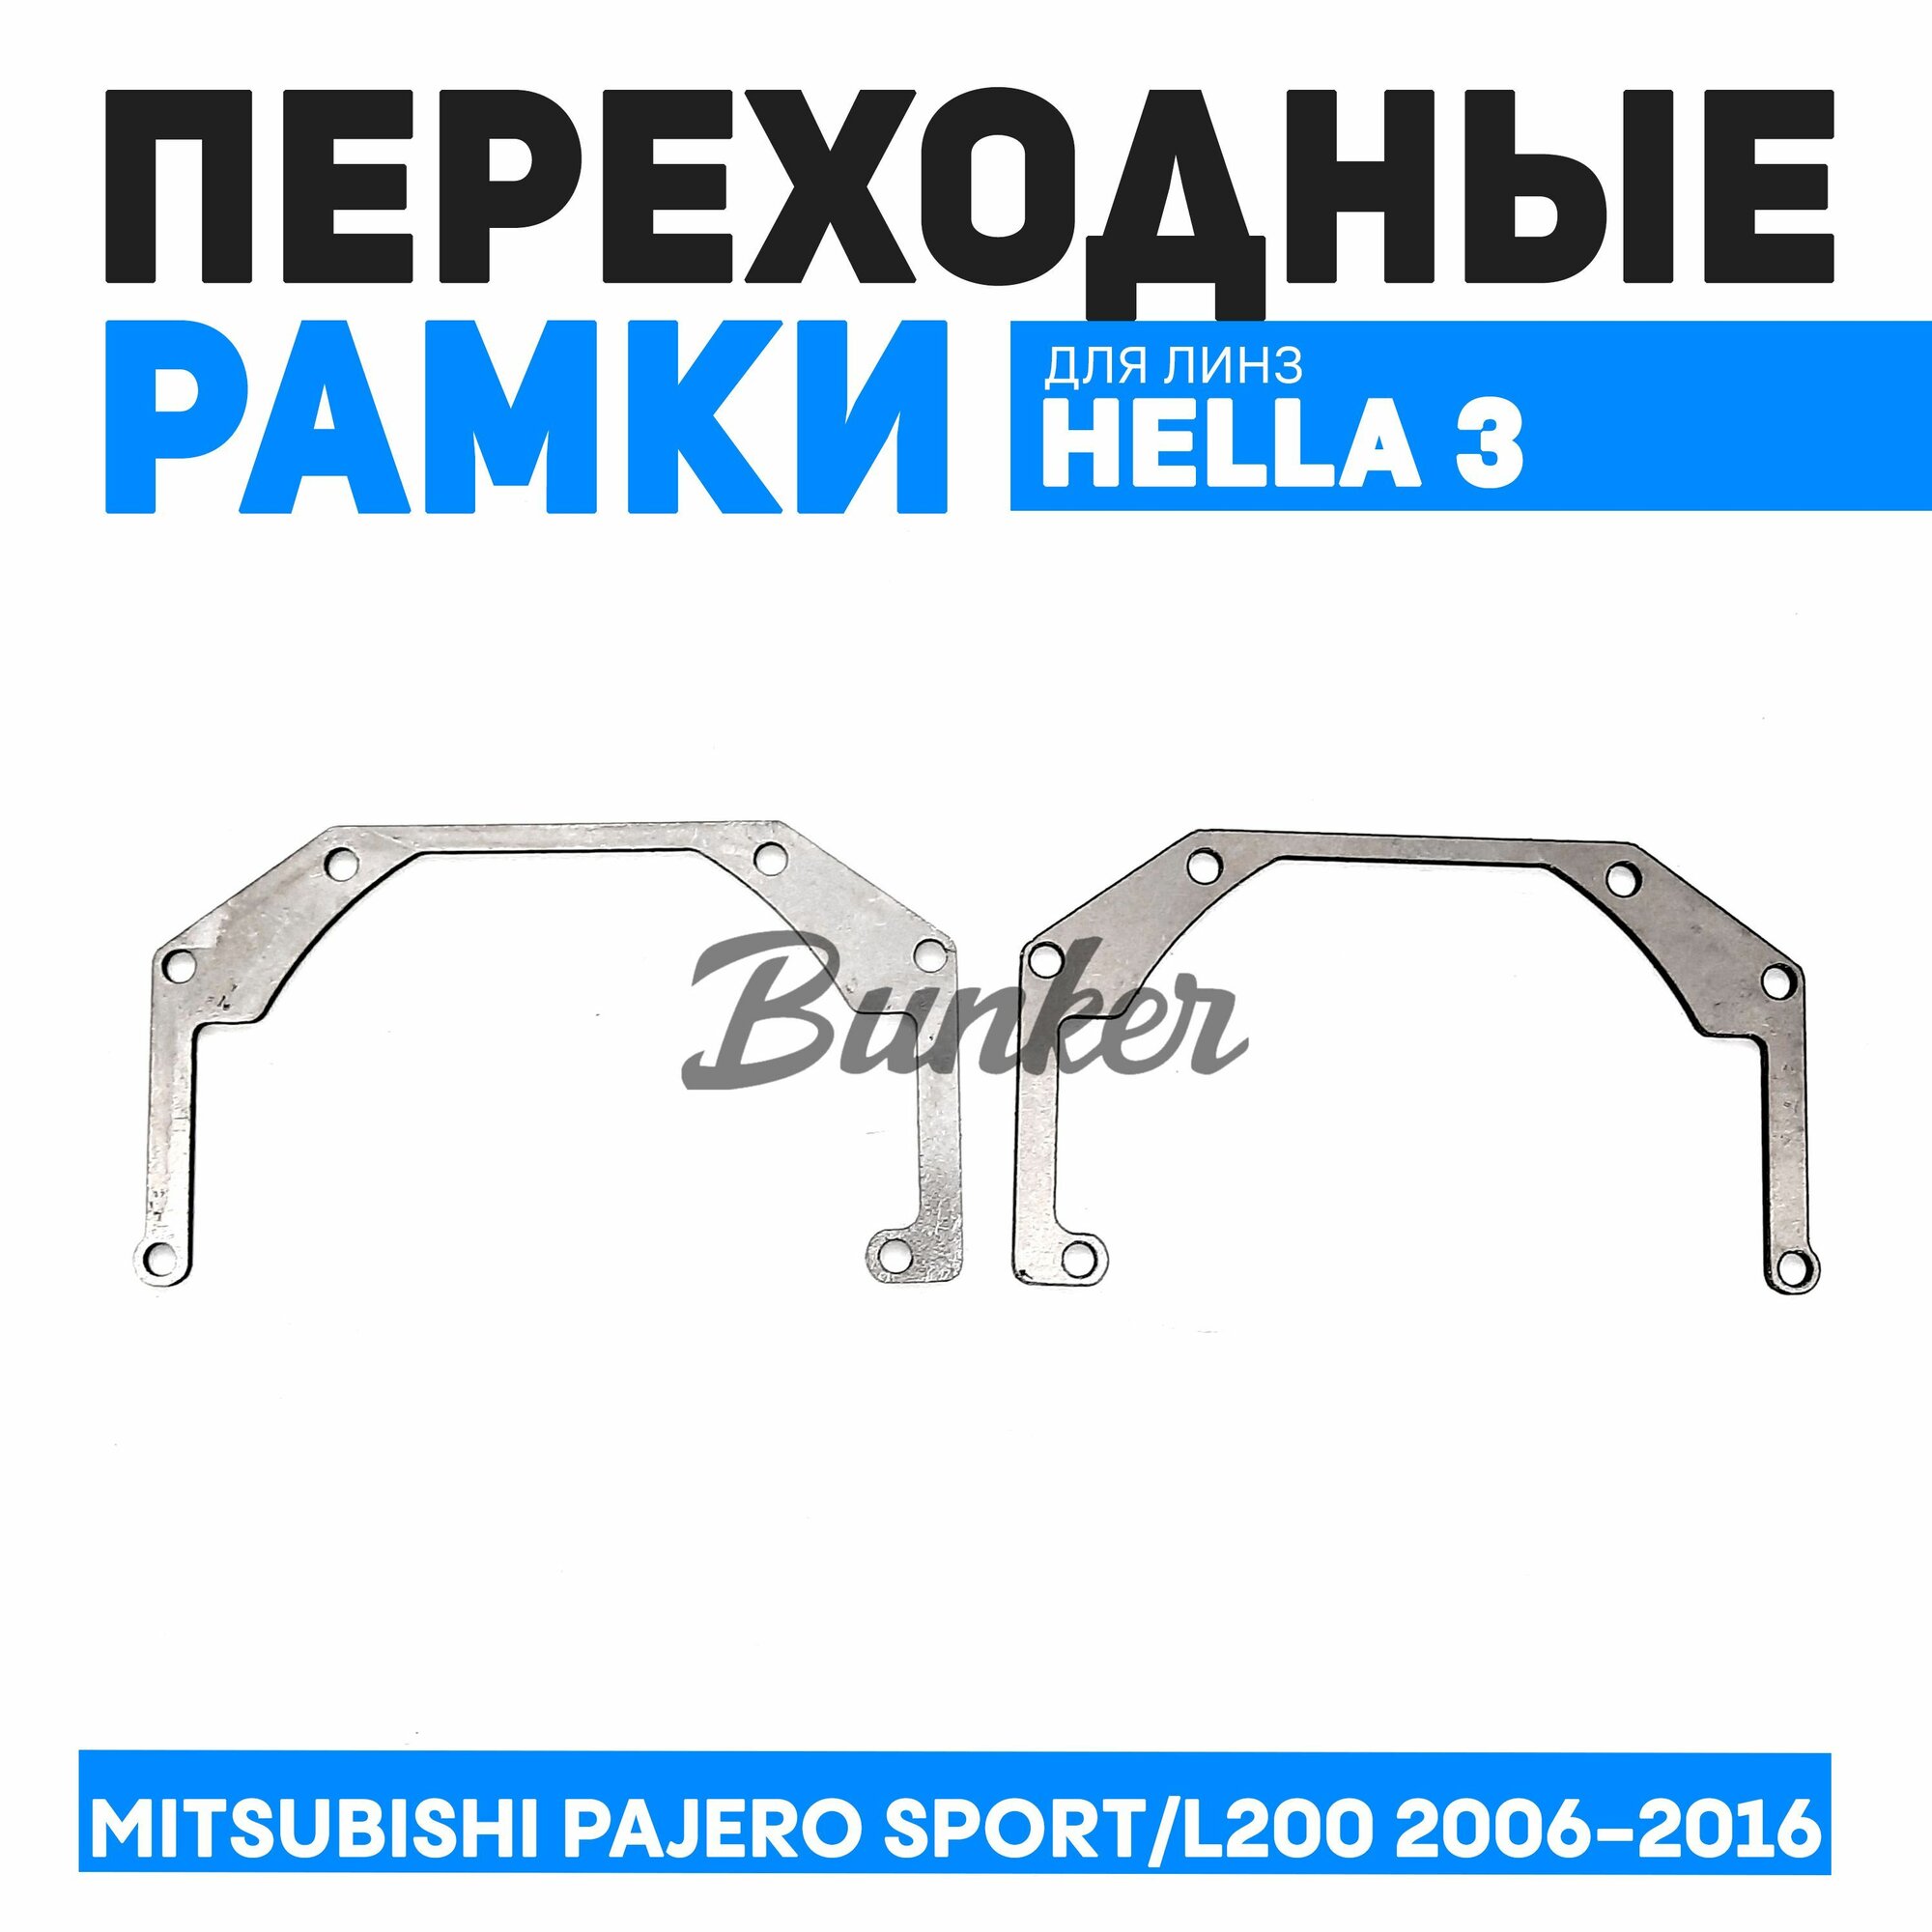 Переходные рамки для замены линз Mitsubishi Pajero Sport / L200 2006-2016 г. в.